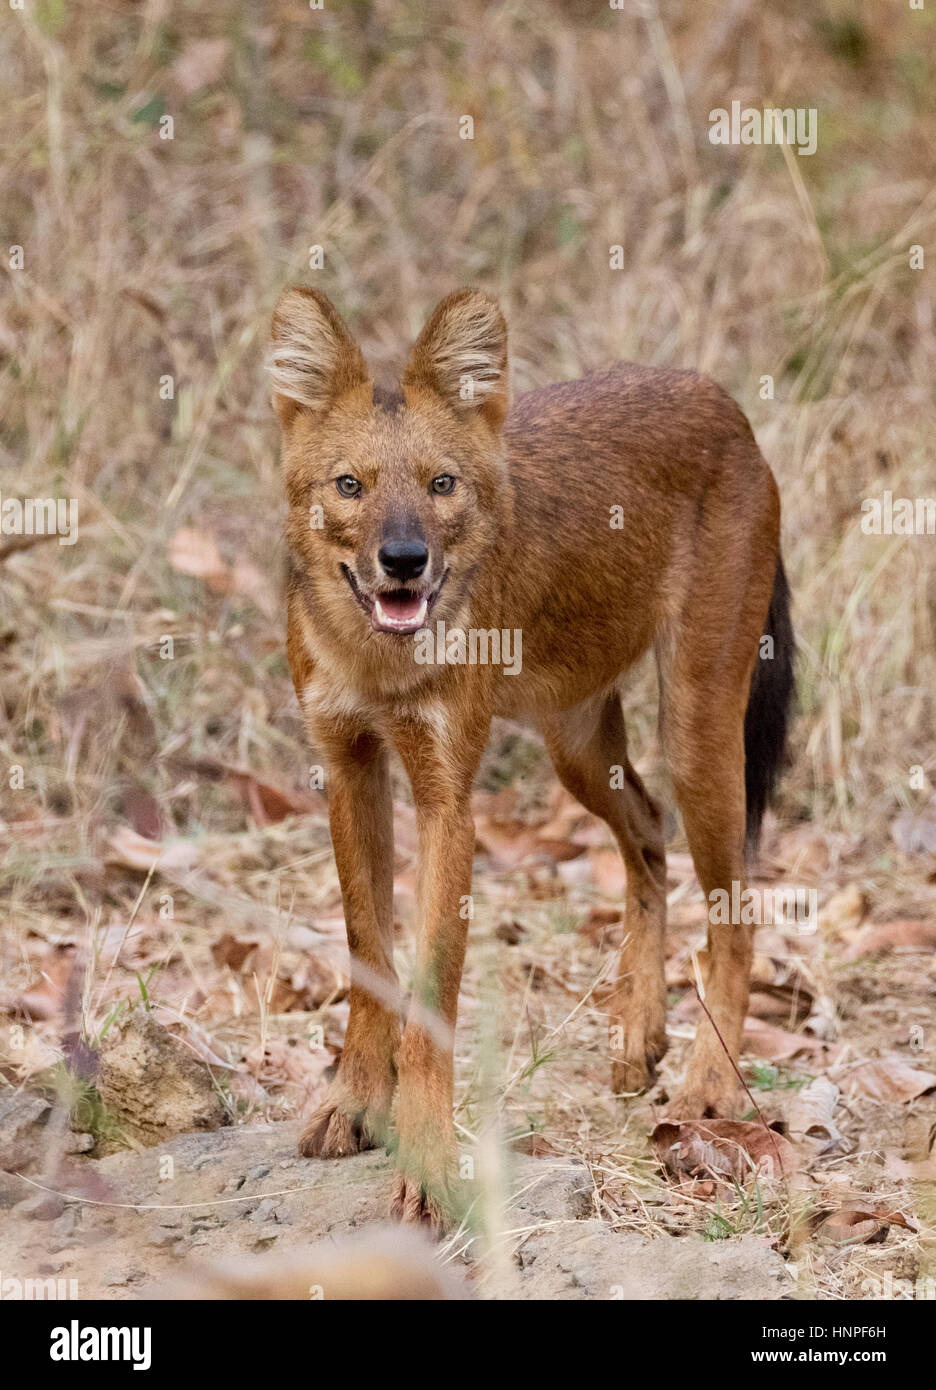 Adulto o perro salvaje indio, Dhole ( Cuon alpinus ), también conocido como el perro salvaje asiático, Tadoba National Park, India Foto de stock